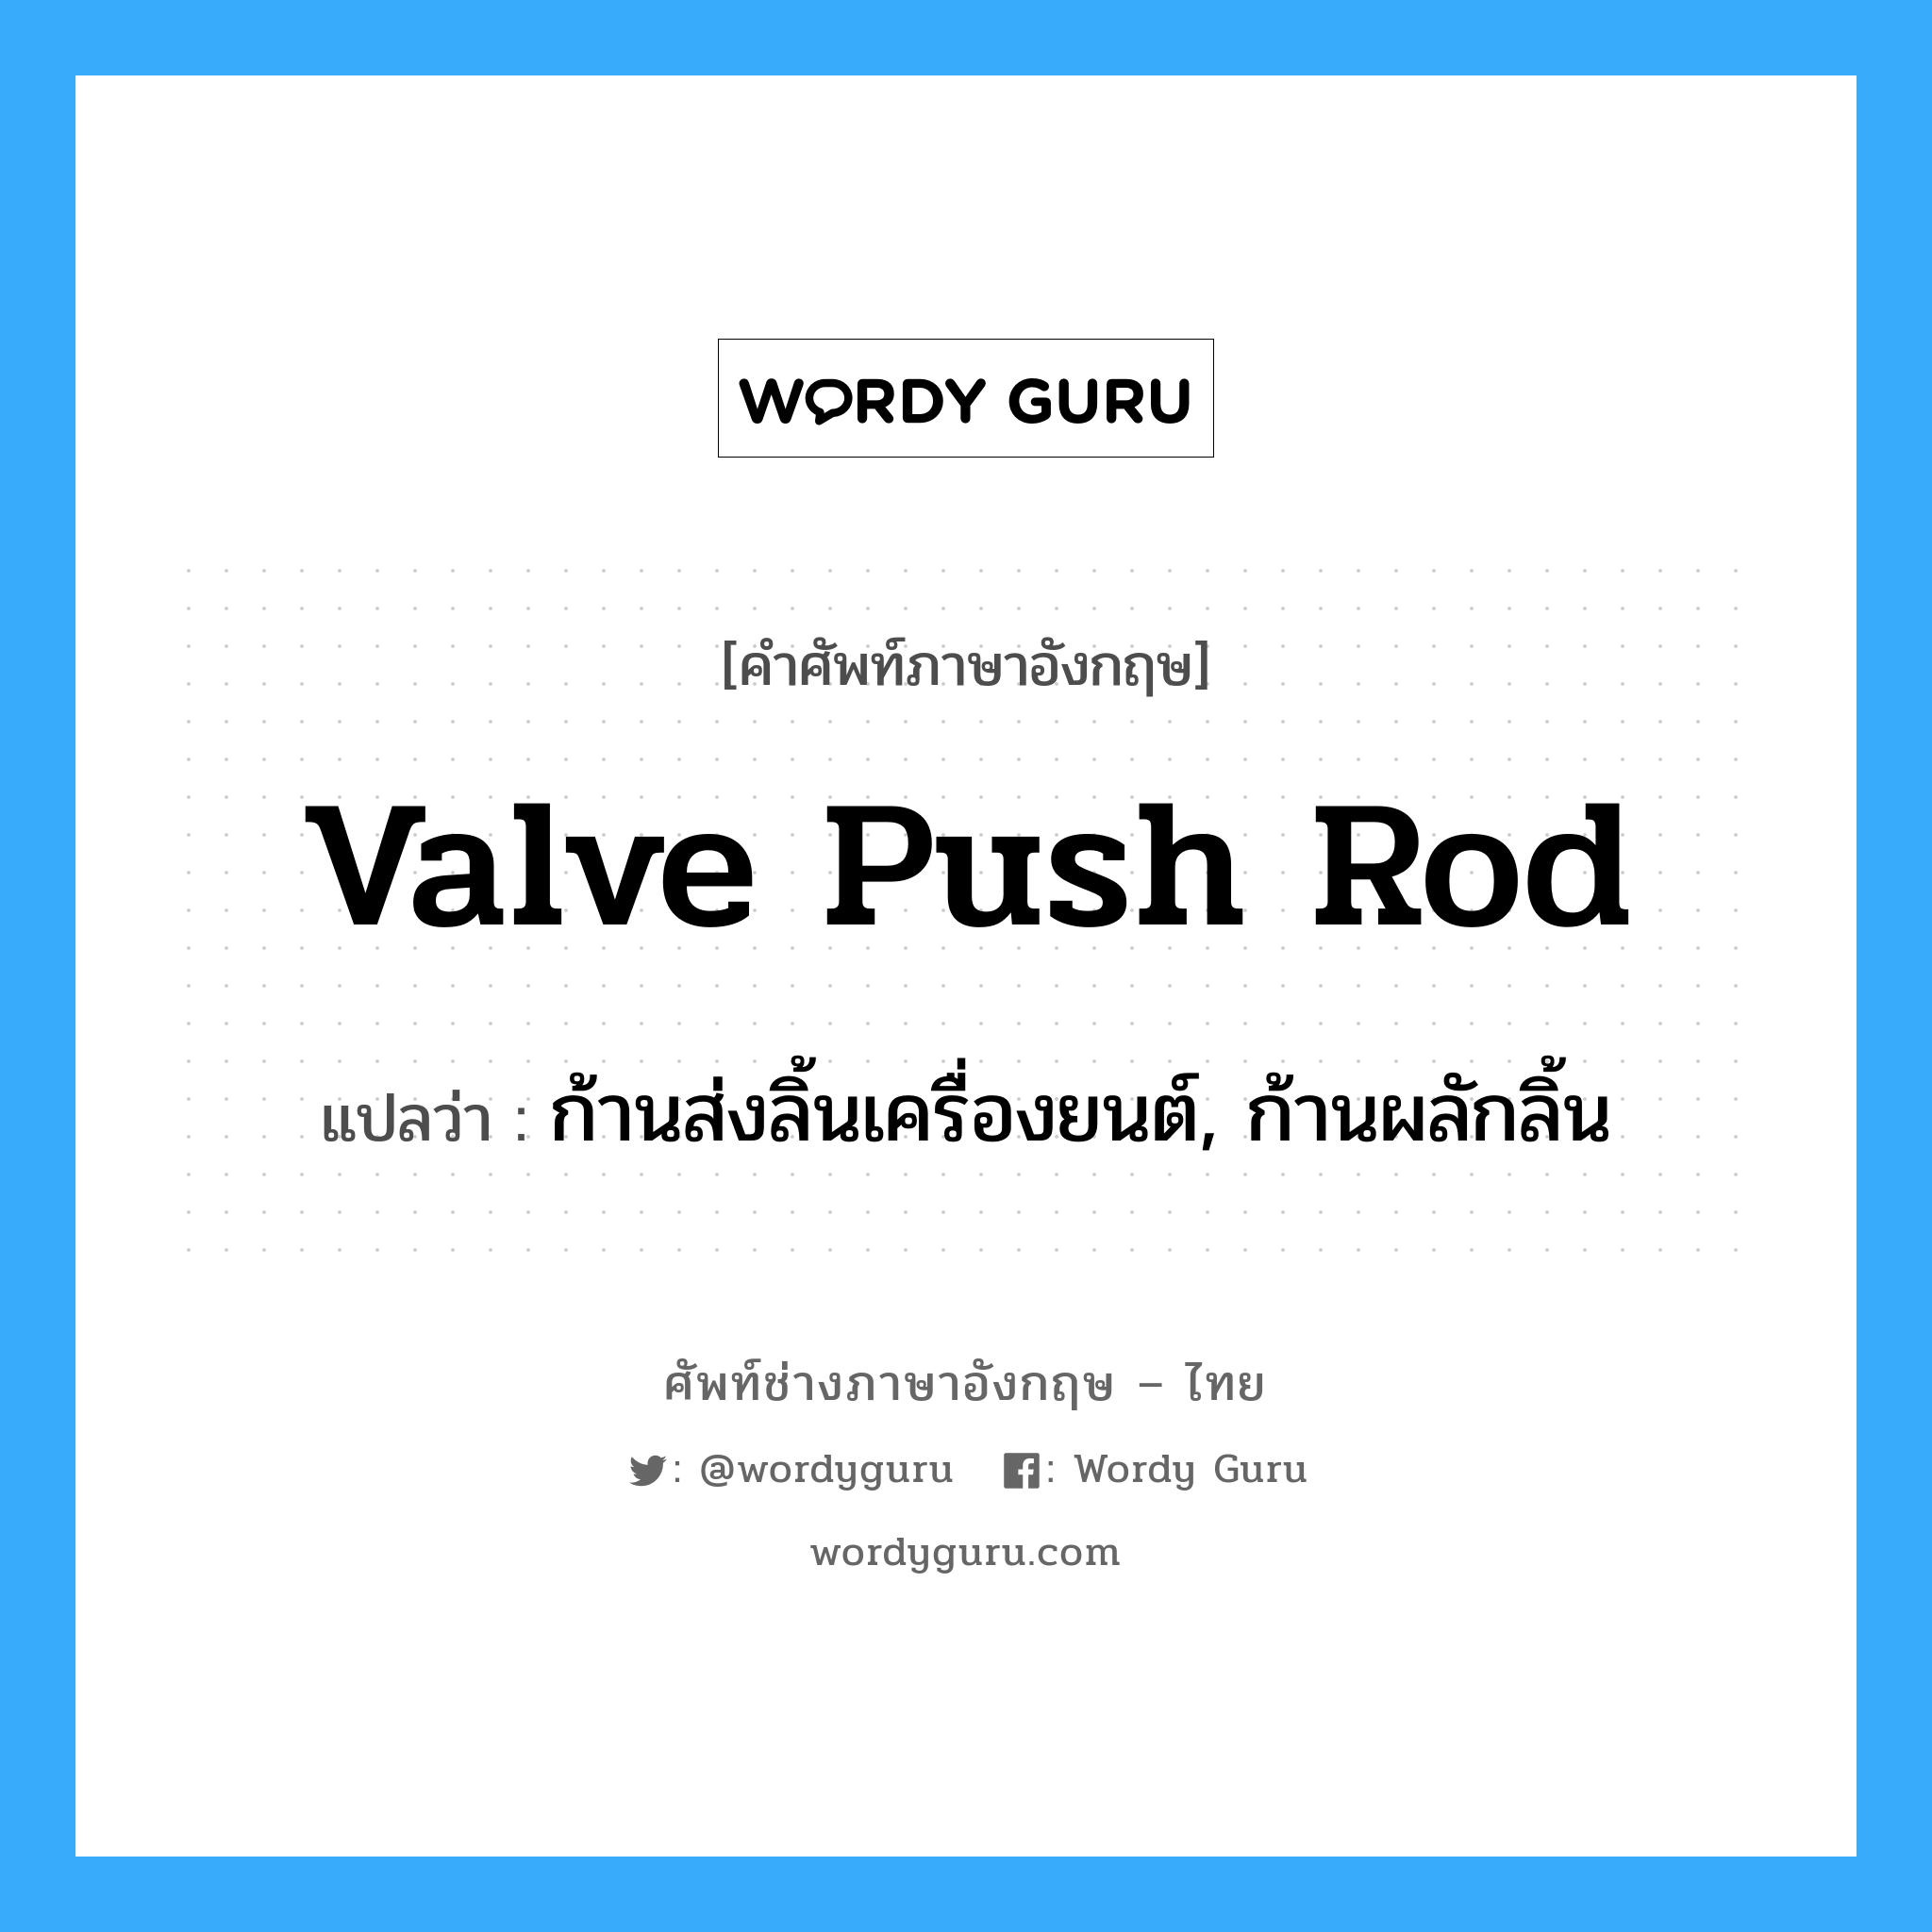 valve push rod แปลว่า?, คำศัพท์ช่างภาษาอังกฤษ - ไทย valve push rod คำศัพท์ภาษาอังกฤษ valve push rod แปลว่า ก้านส่งลิ้นเครื่องยนต์, ก้านผลักลิ้น